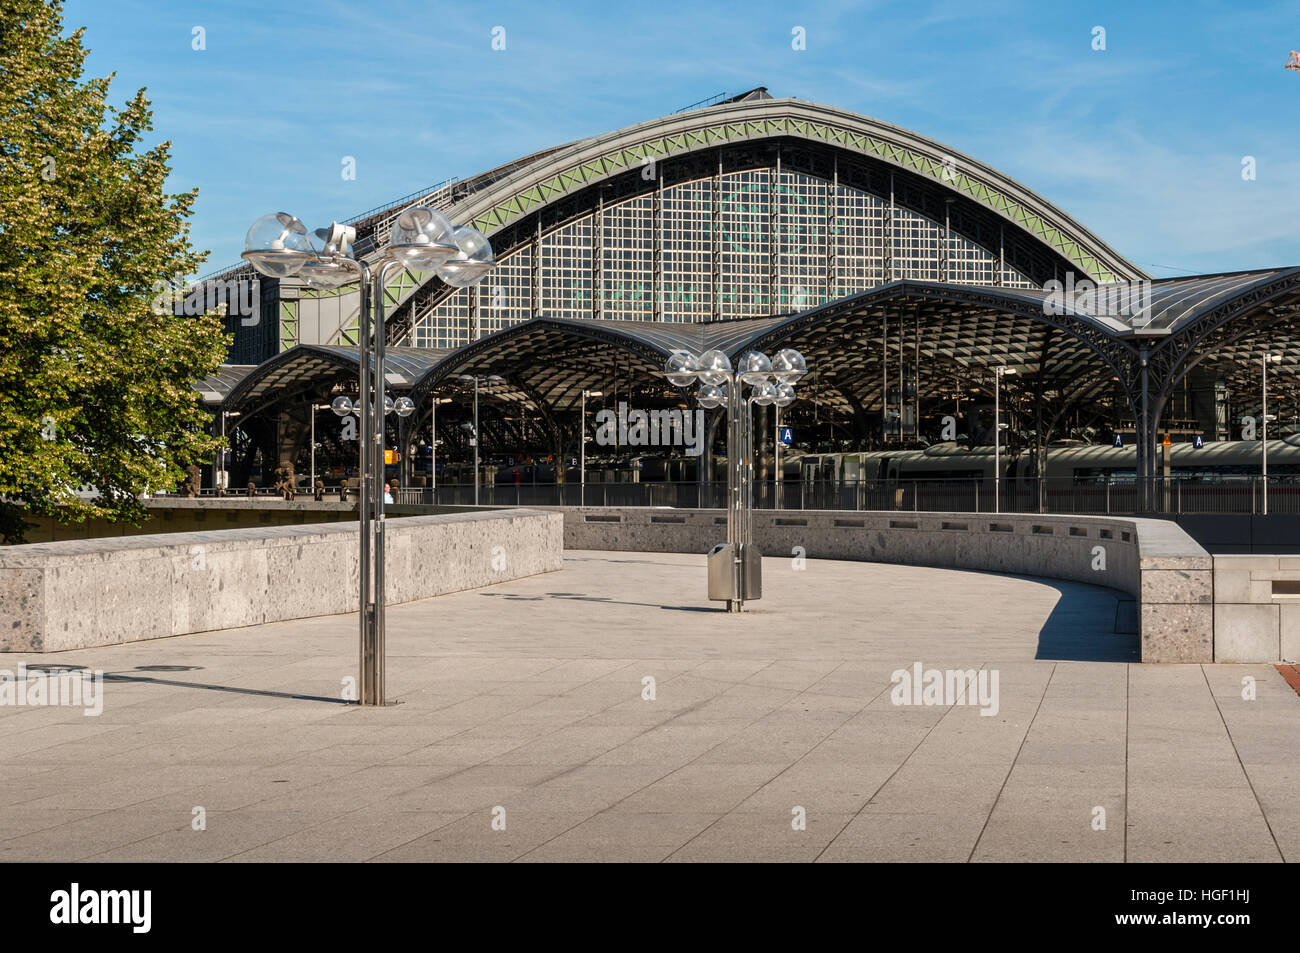 La gare principale de Cologne, vue de la Cathédrale, NRW, Allemagne Banque D'Images